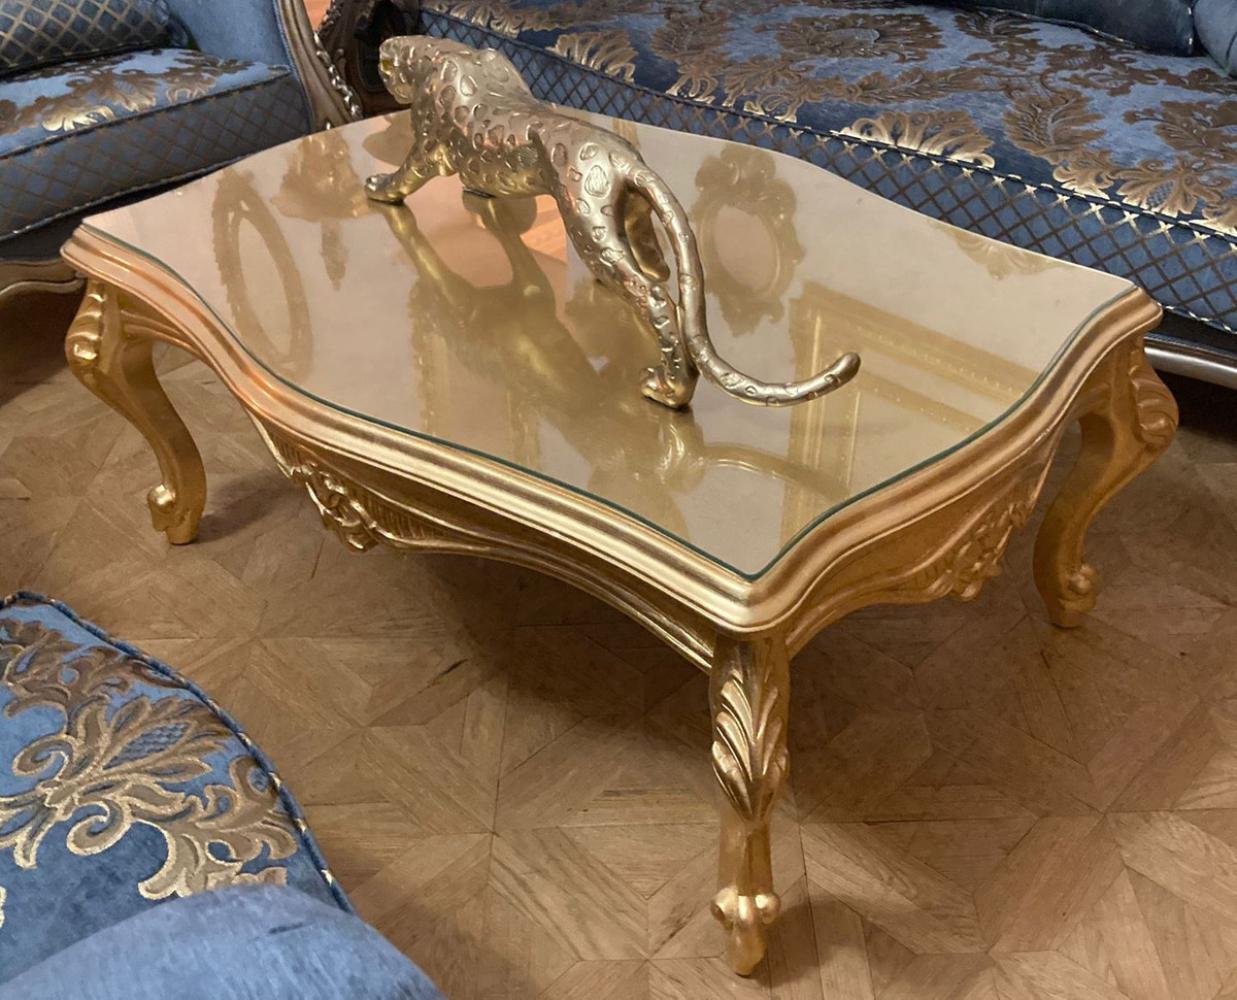 Casa Padrino Luxus Barock Couchtisch mit Glasplatte Gold - Rechteckiger Massivholz Wohnzimmertisch im Barockstil - Barock Möbel - Luxus Möbel im Barockstil - Barock Einrichtung - Edel & Prunkvoll Bild 1